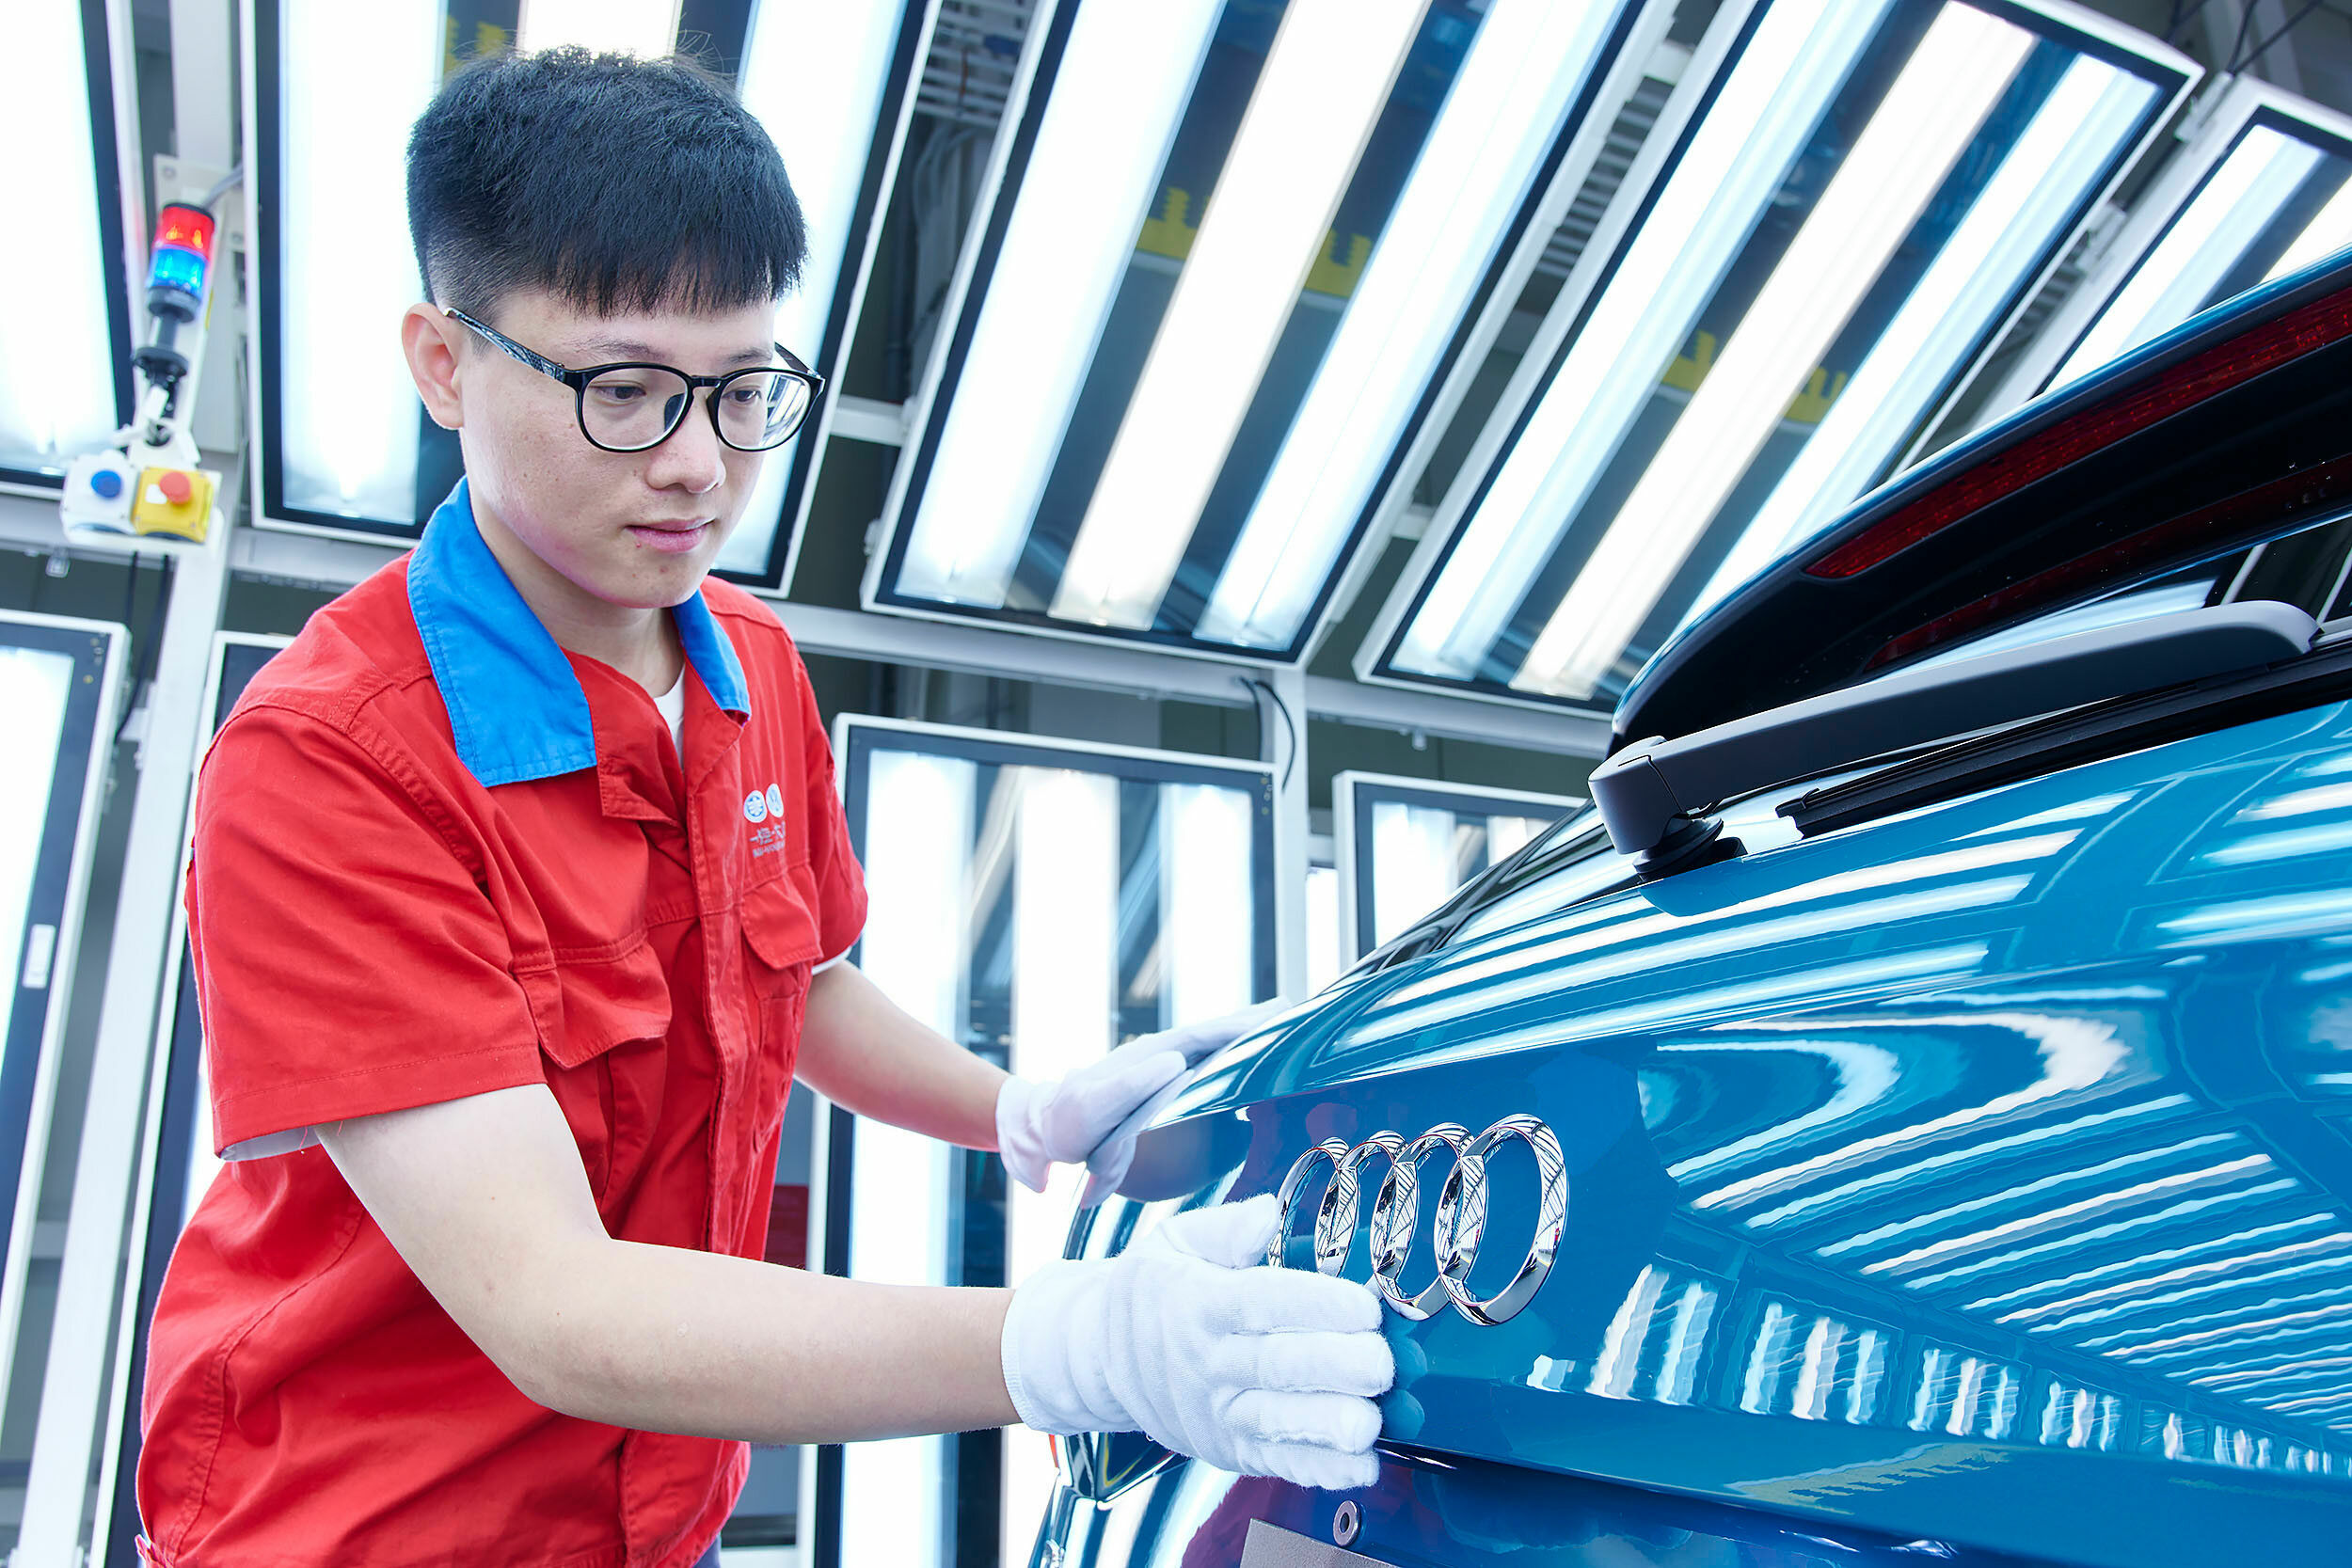 Audi und FAW gründen neues Unternehmen zur Produktion von Elektrofahrzeugen in China